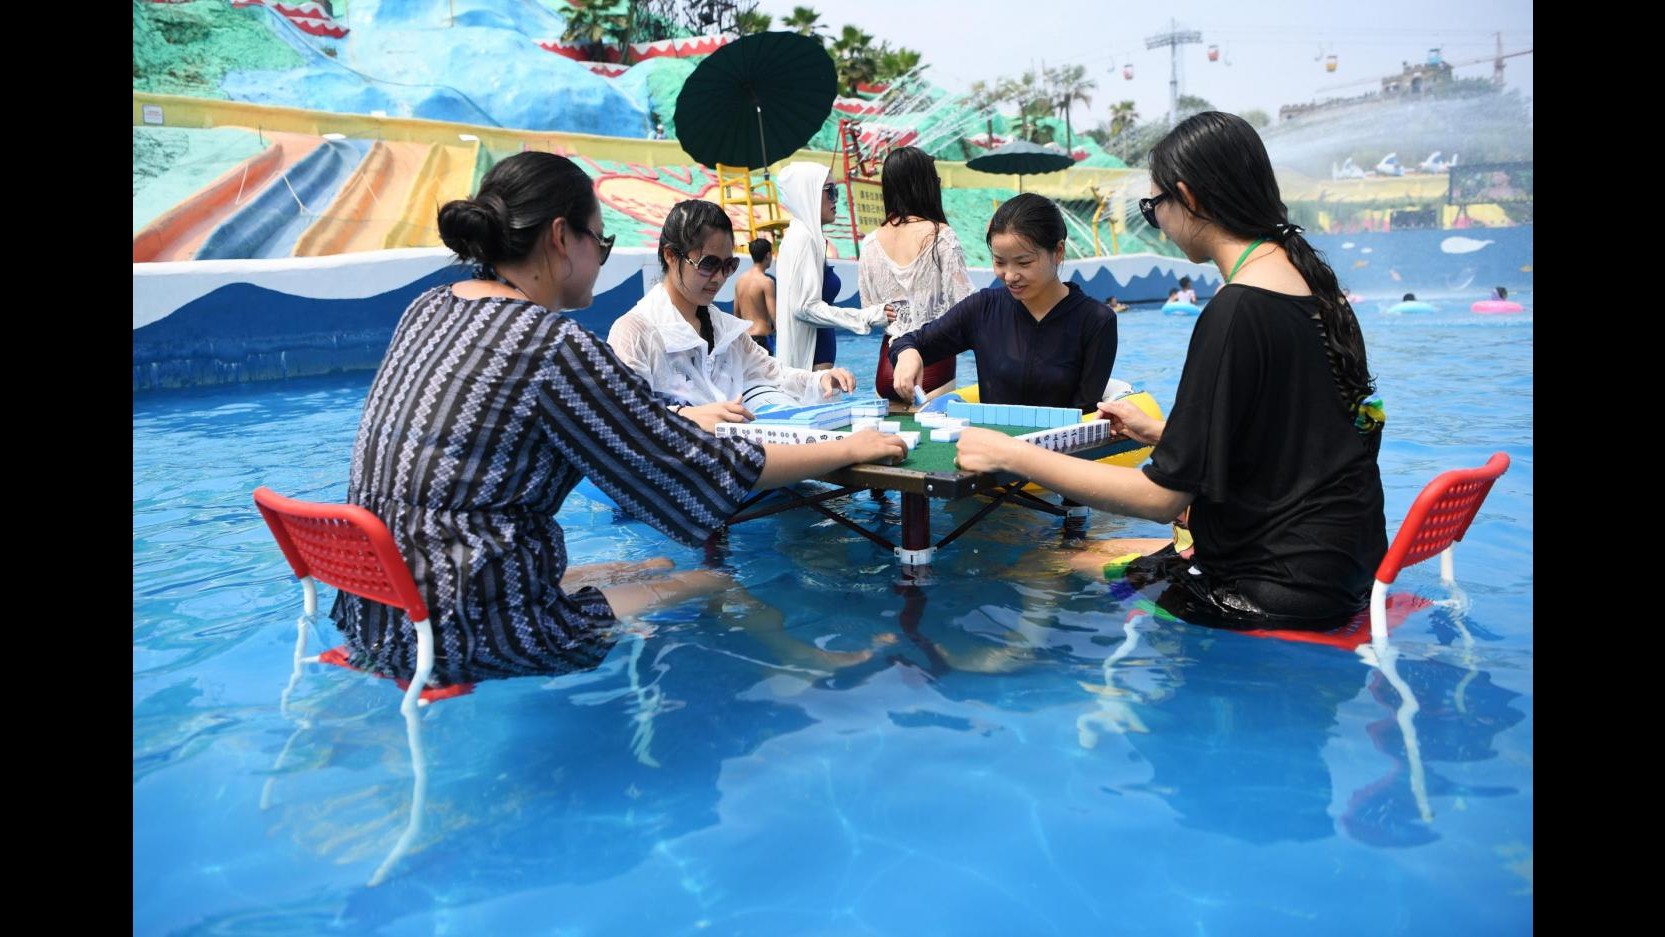 Cina, temperature oltre i 40 gradi: i giochi da tavolo si fanno in acqua